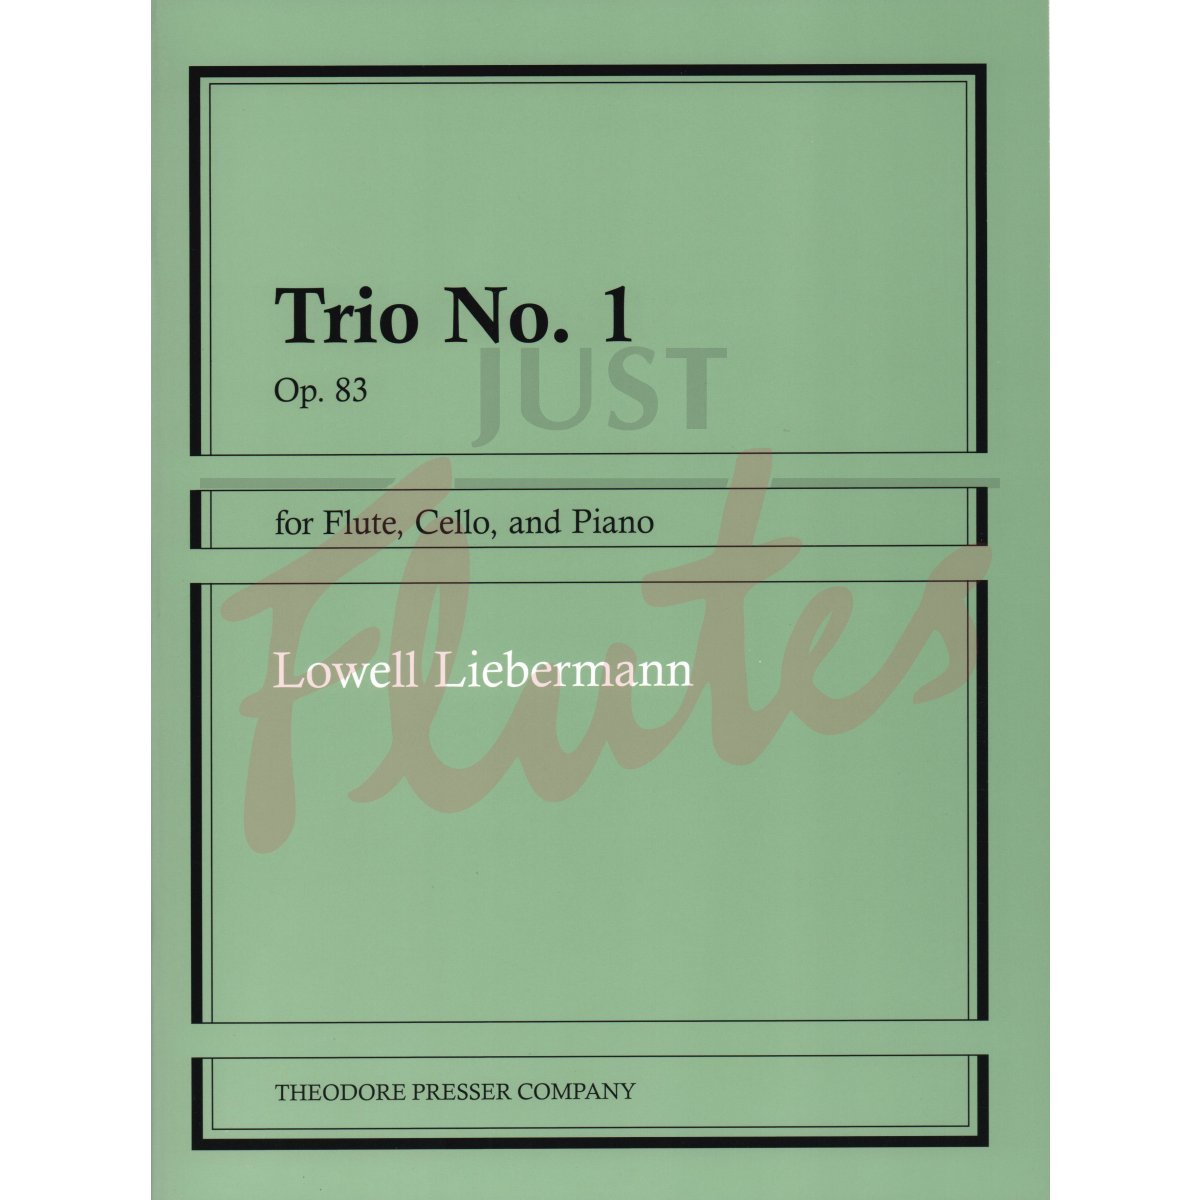 Trio No. 1 for Flute, Cello and Piano